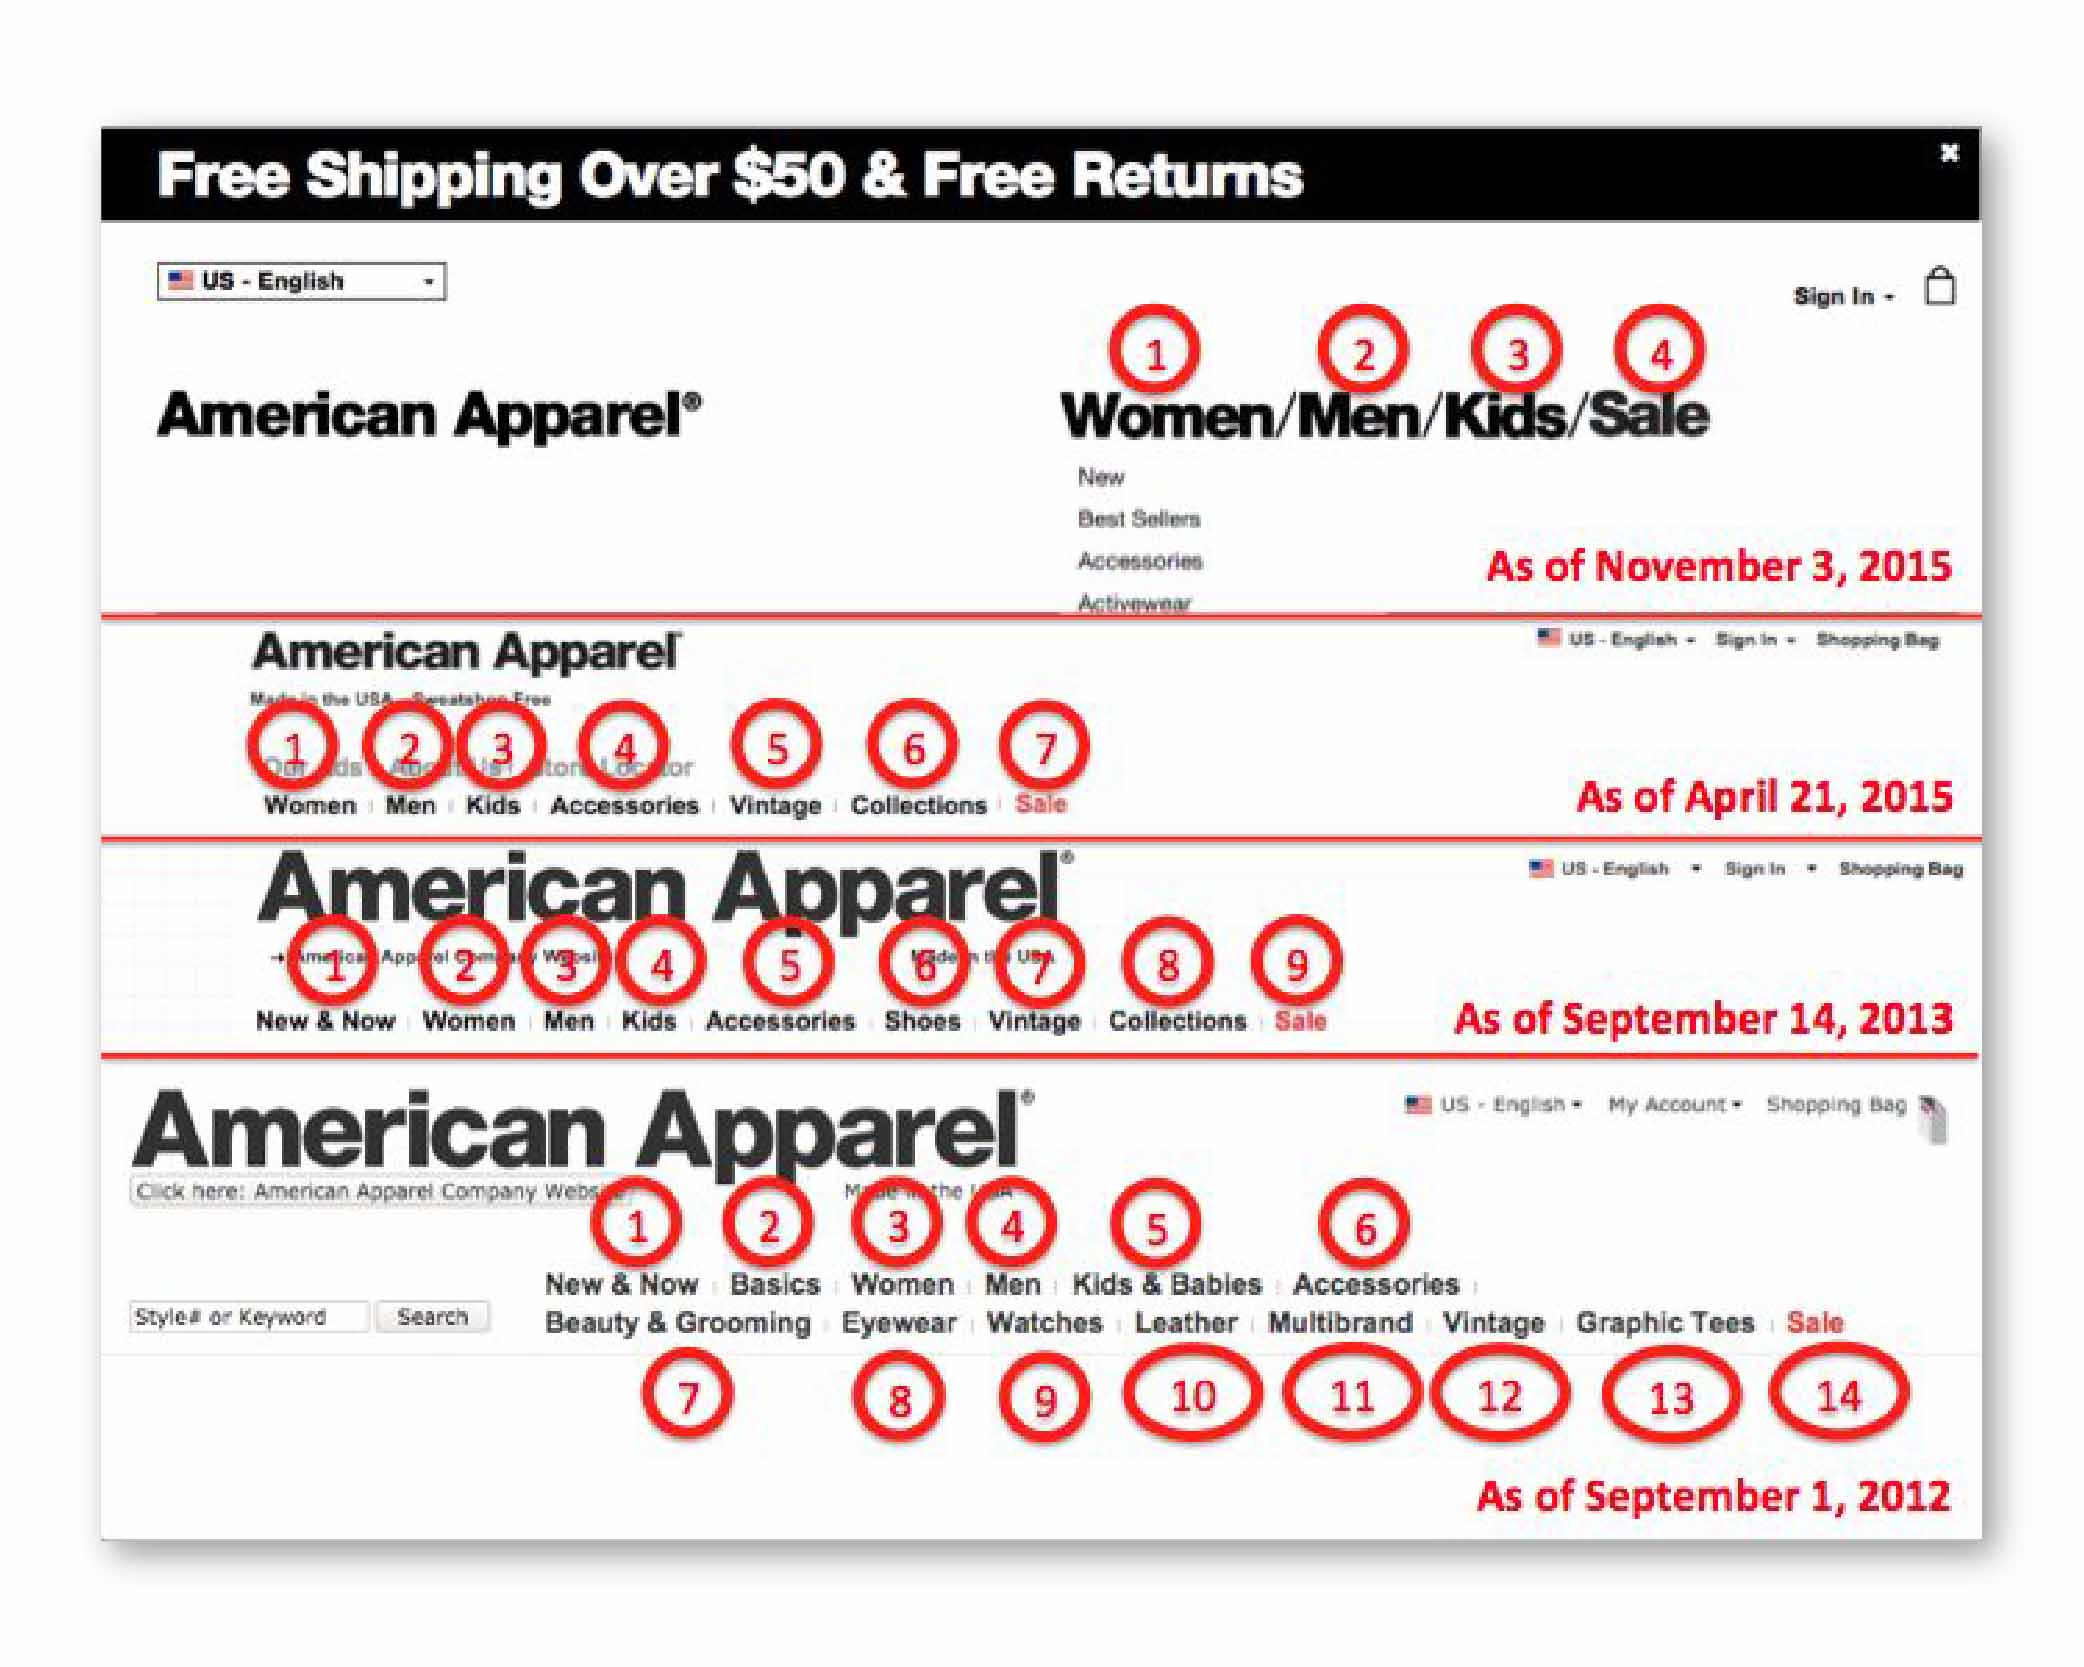 zmensovanie poctu poloziek v hlavnom menu na e-shope American Apparel